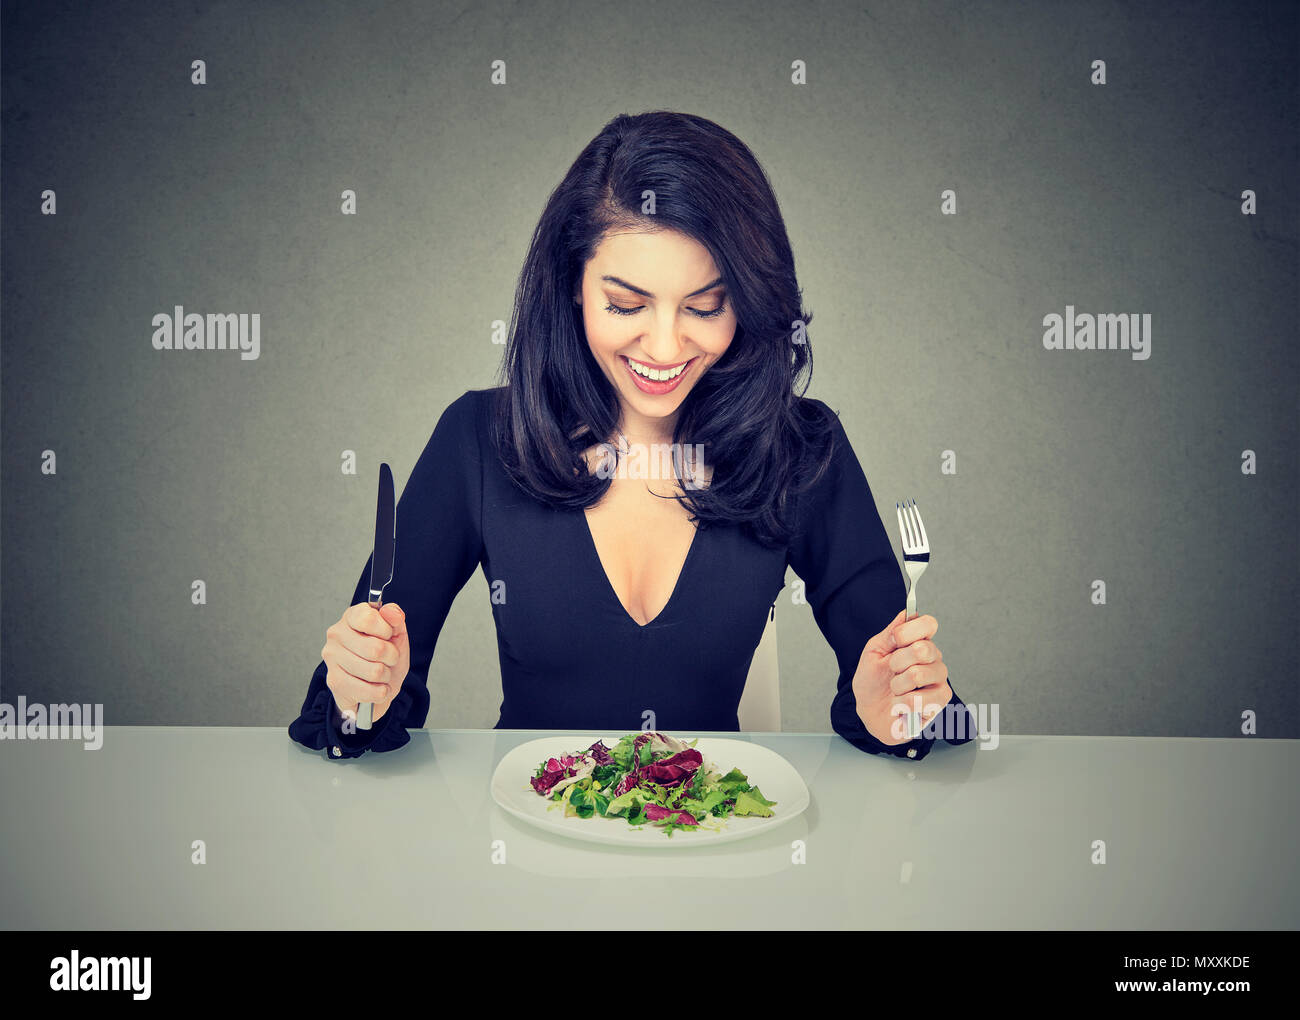 Belle brune assise à table et à la plaque avec une salade avec excitation à avoir une alimentation saine pour perdre du poids Banque D'Images